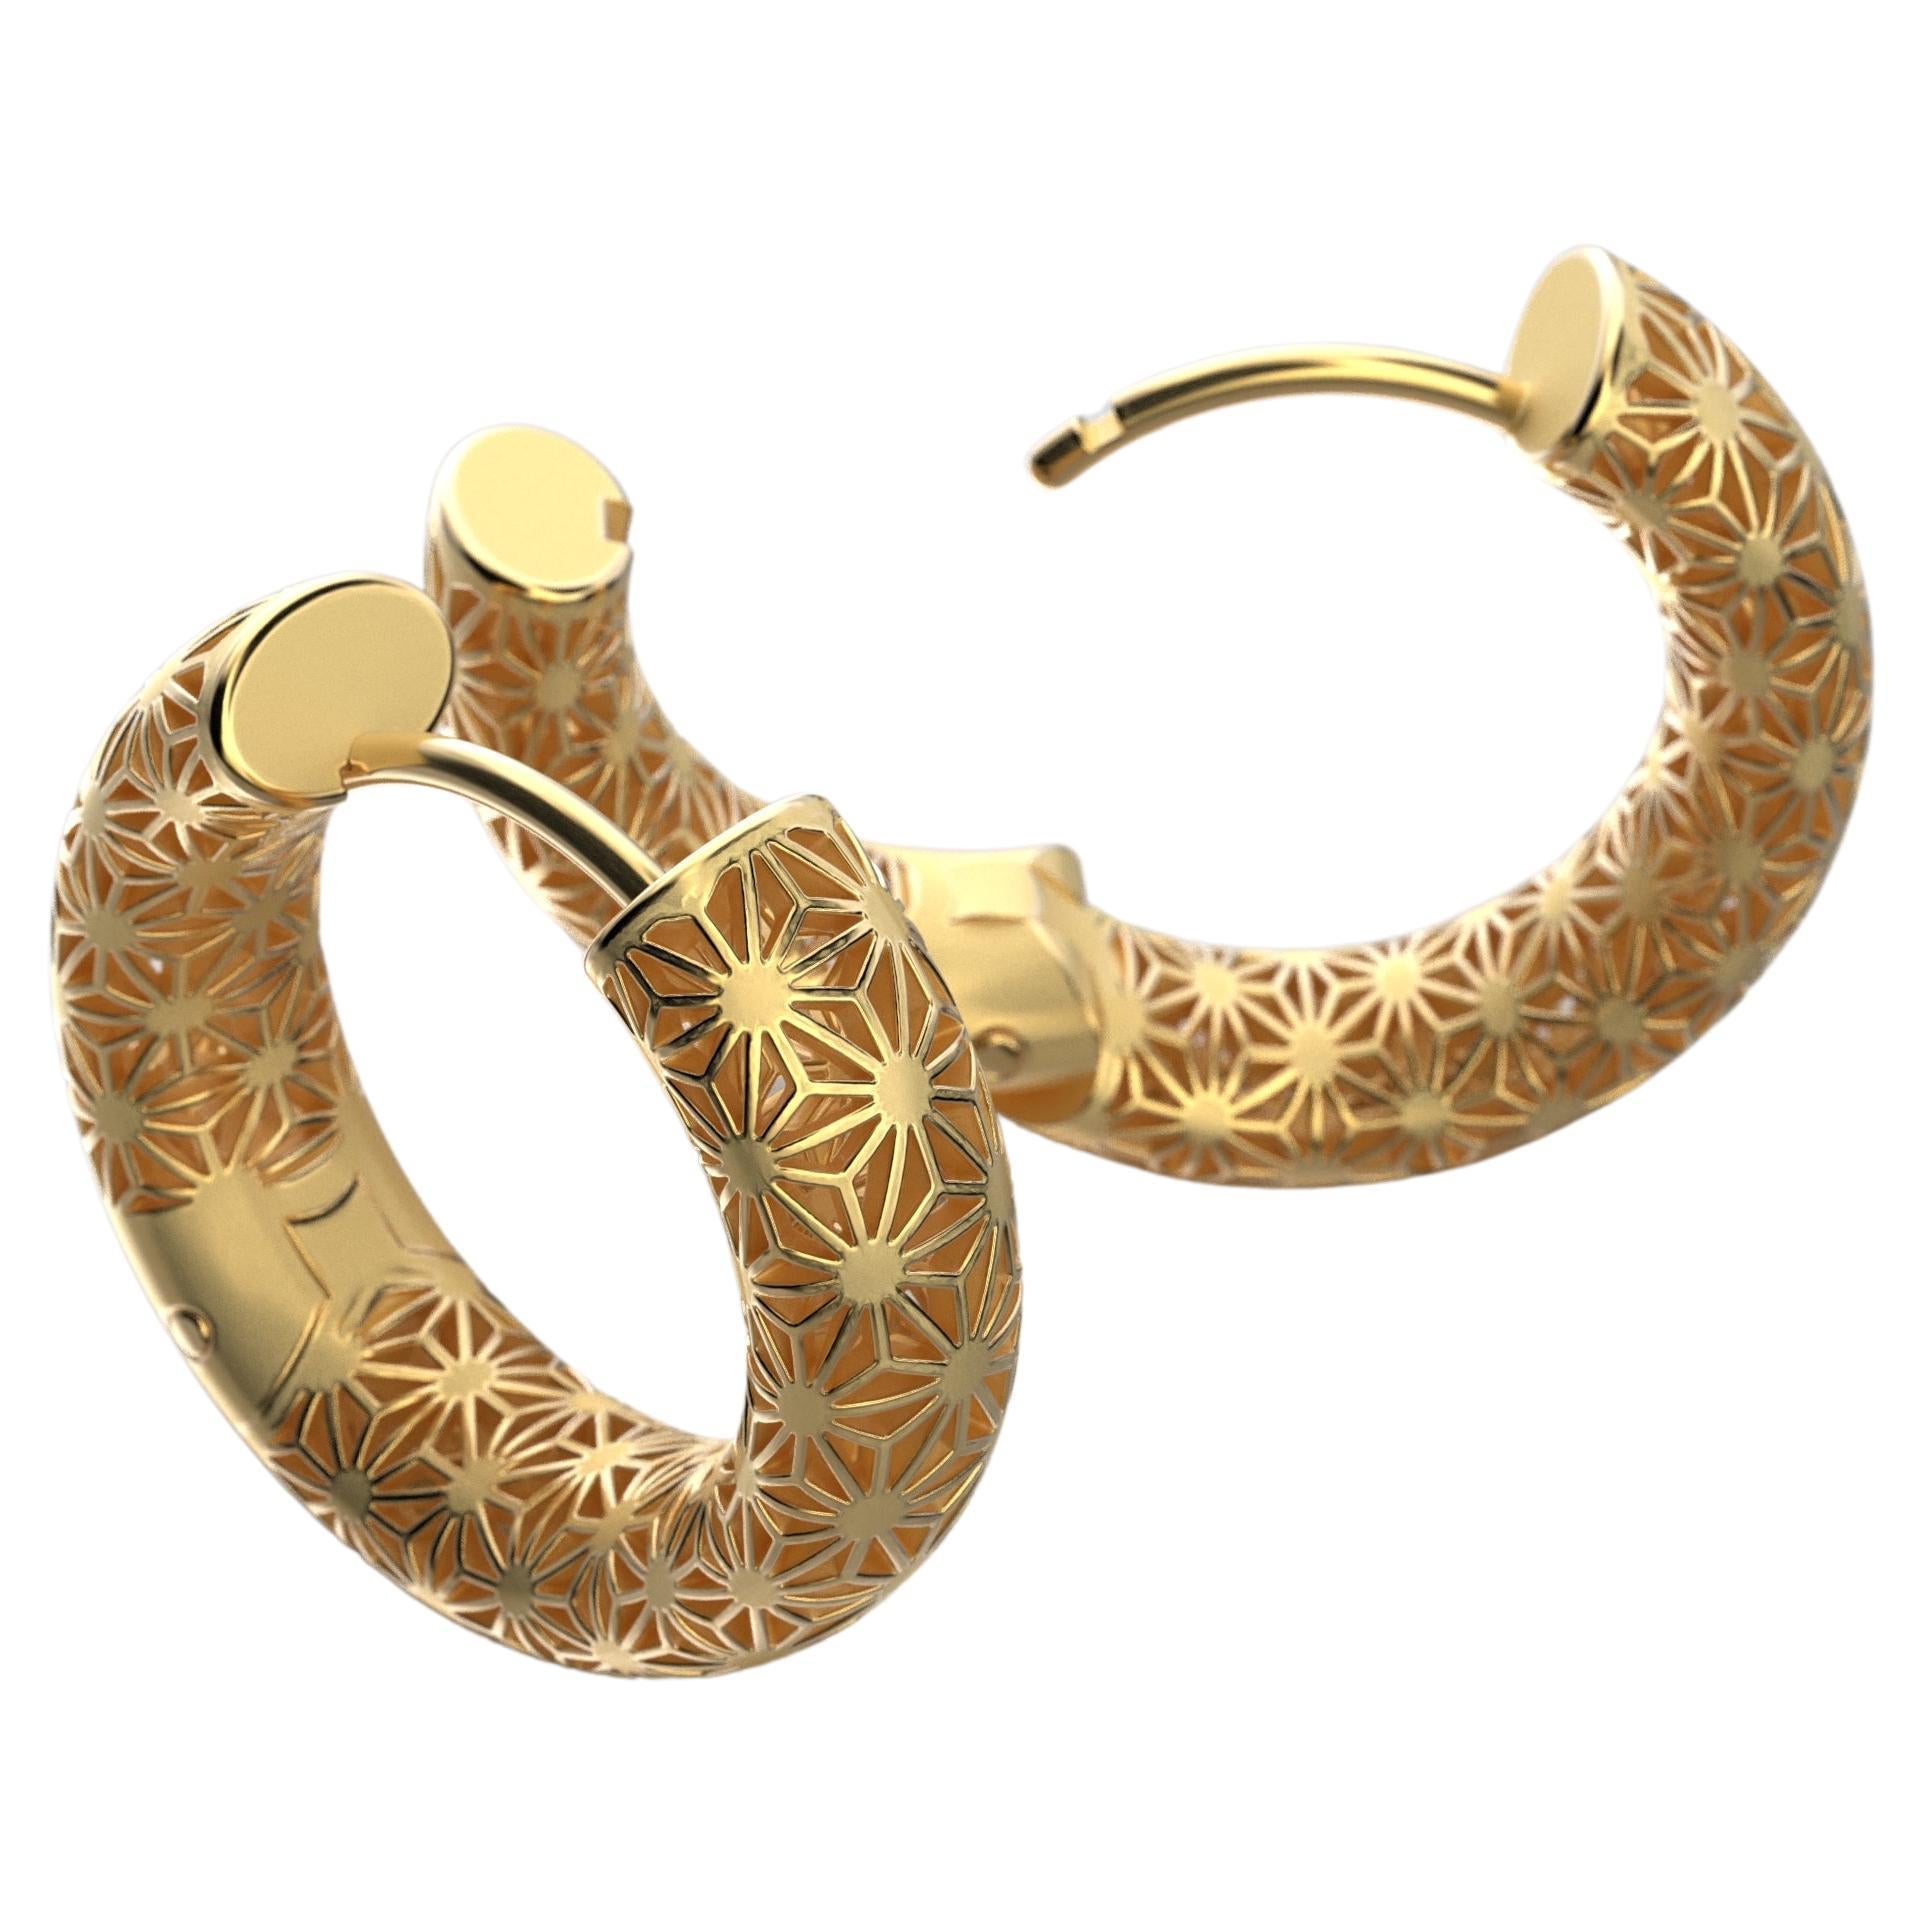 Modern  Oltremare Gioielli 18K Italian Gold Hoop Earrings - Sashiko Japanese Pattern  For Sale